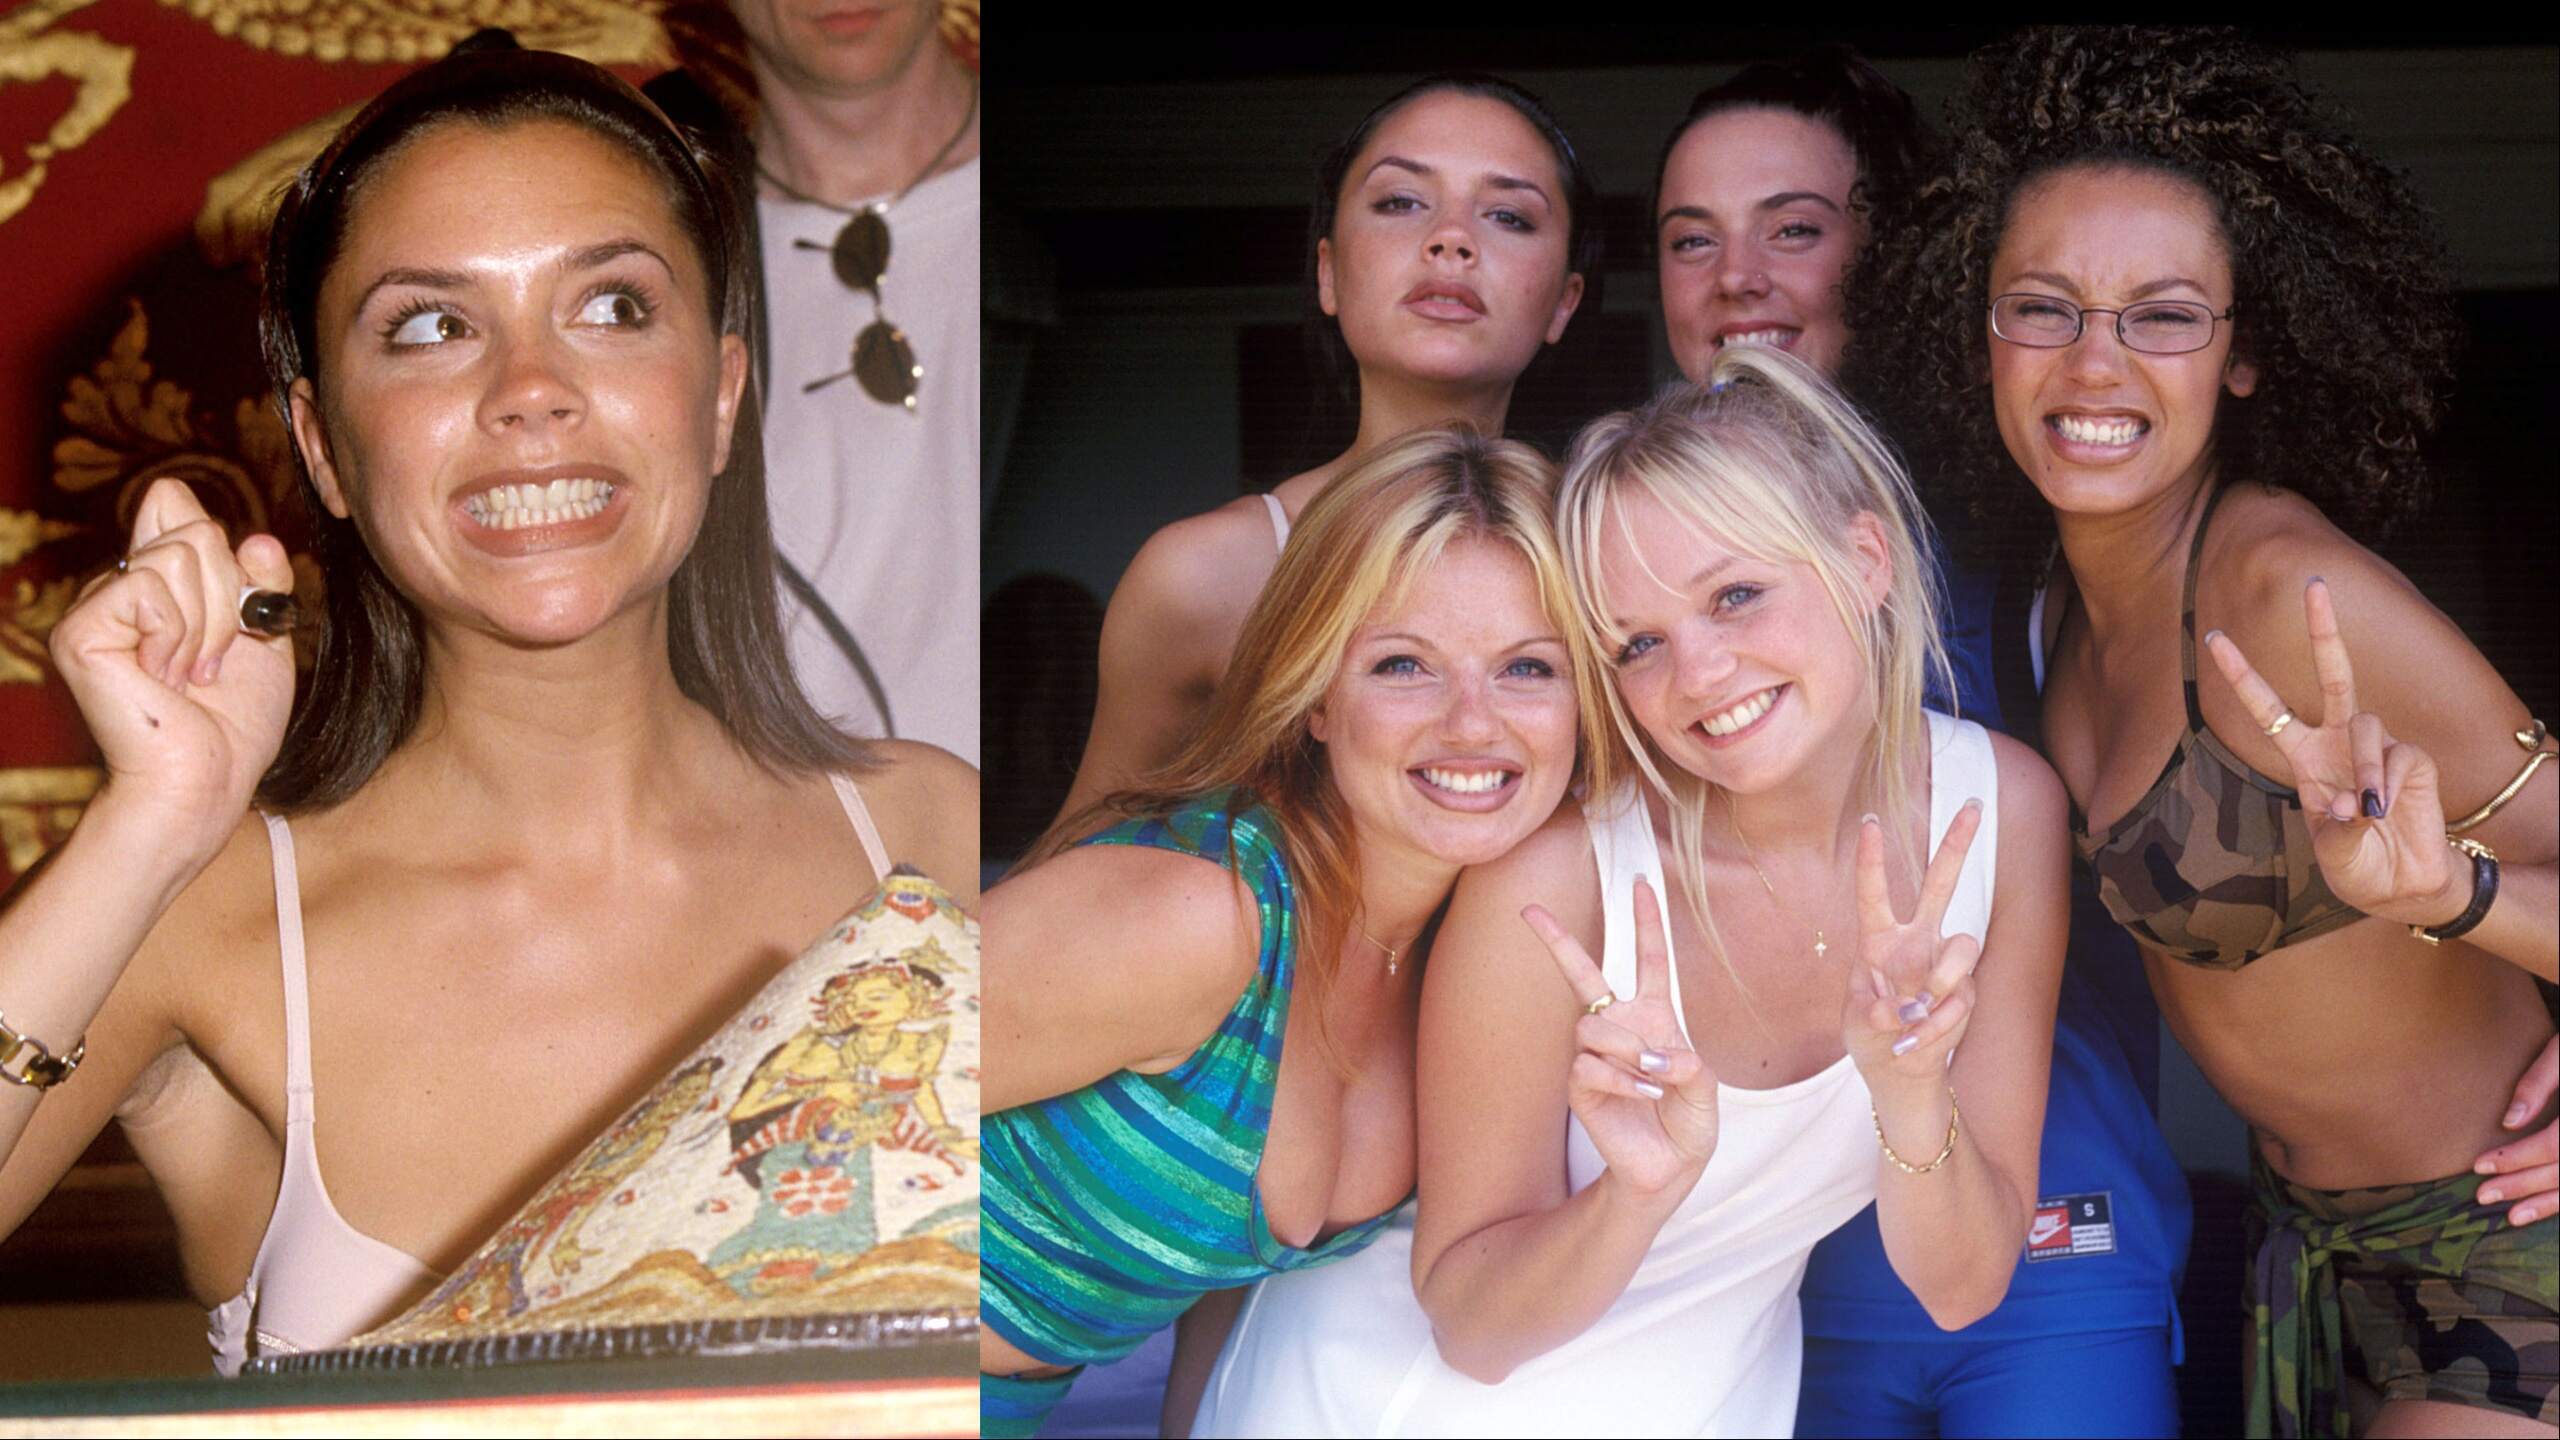 Spice Girls Victoria Beckham, Geri Halliwell, Melanie Brown, Emma Bunton, and Melanie Chisholm pose for photos in Bali in 1997